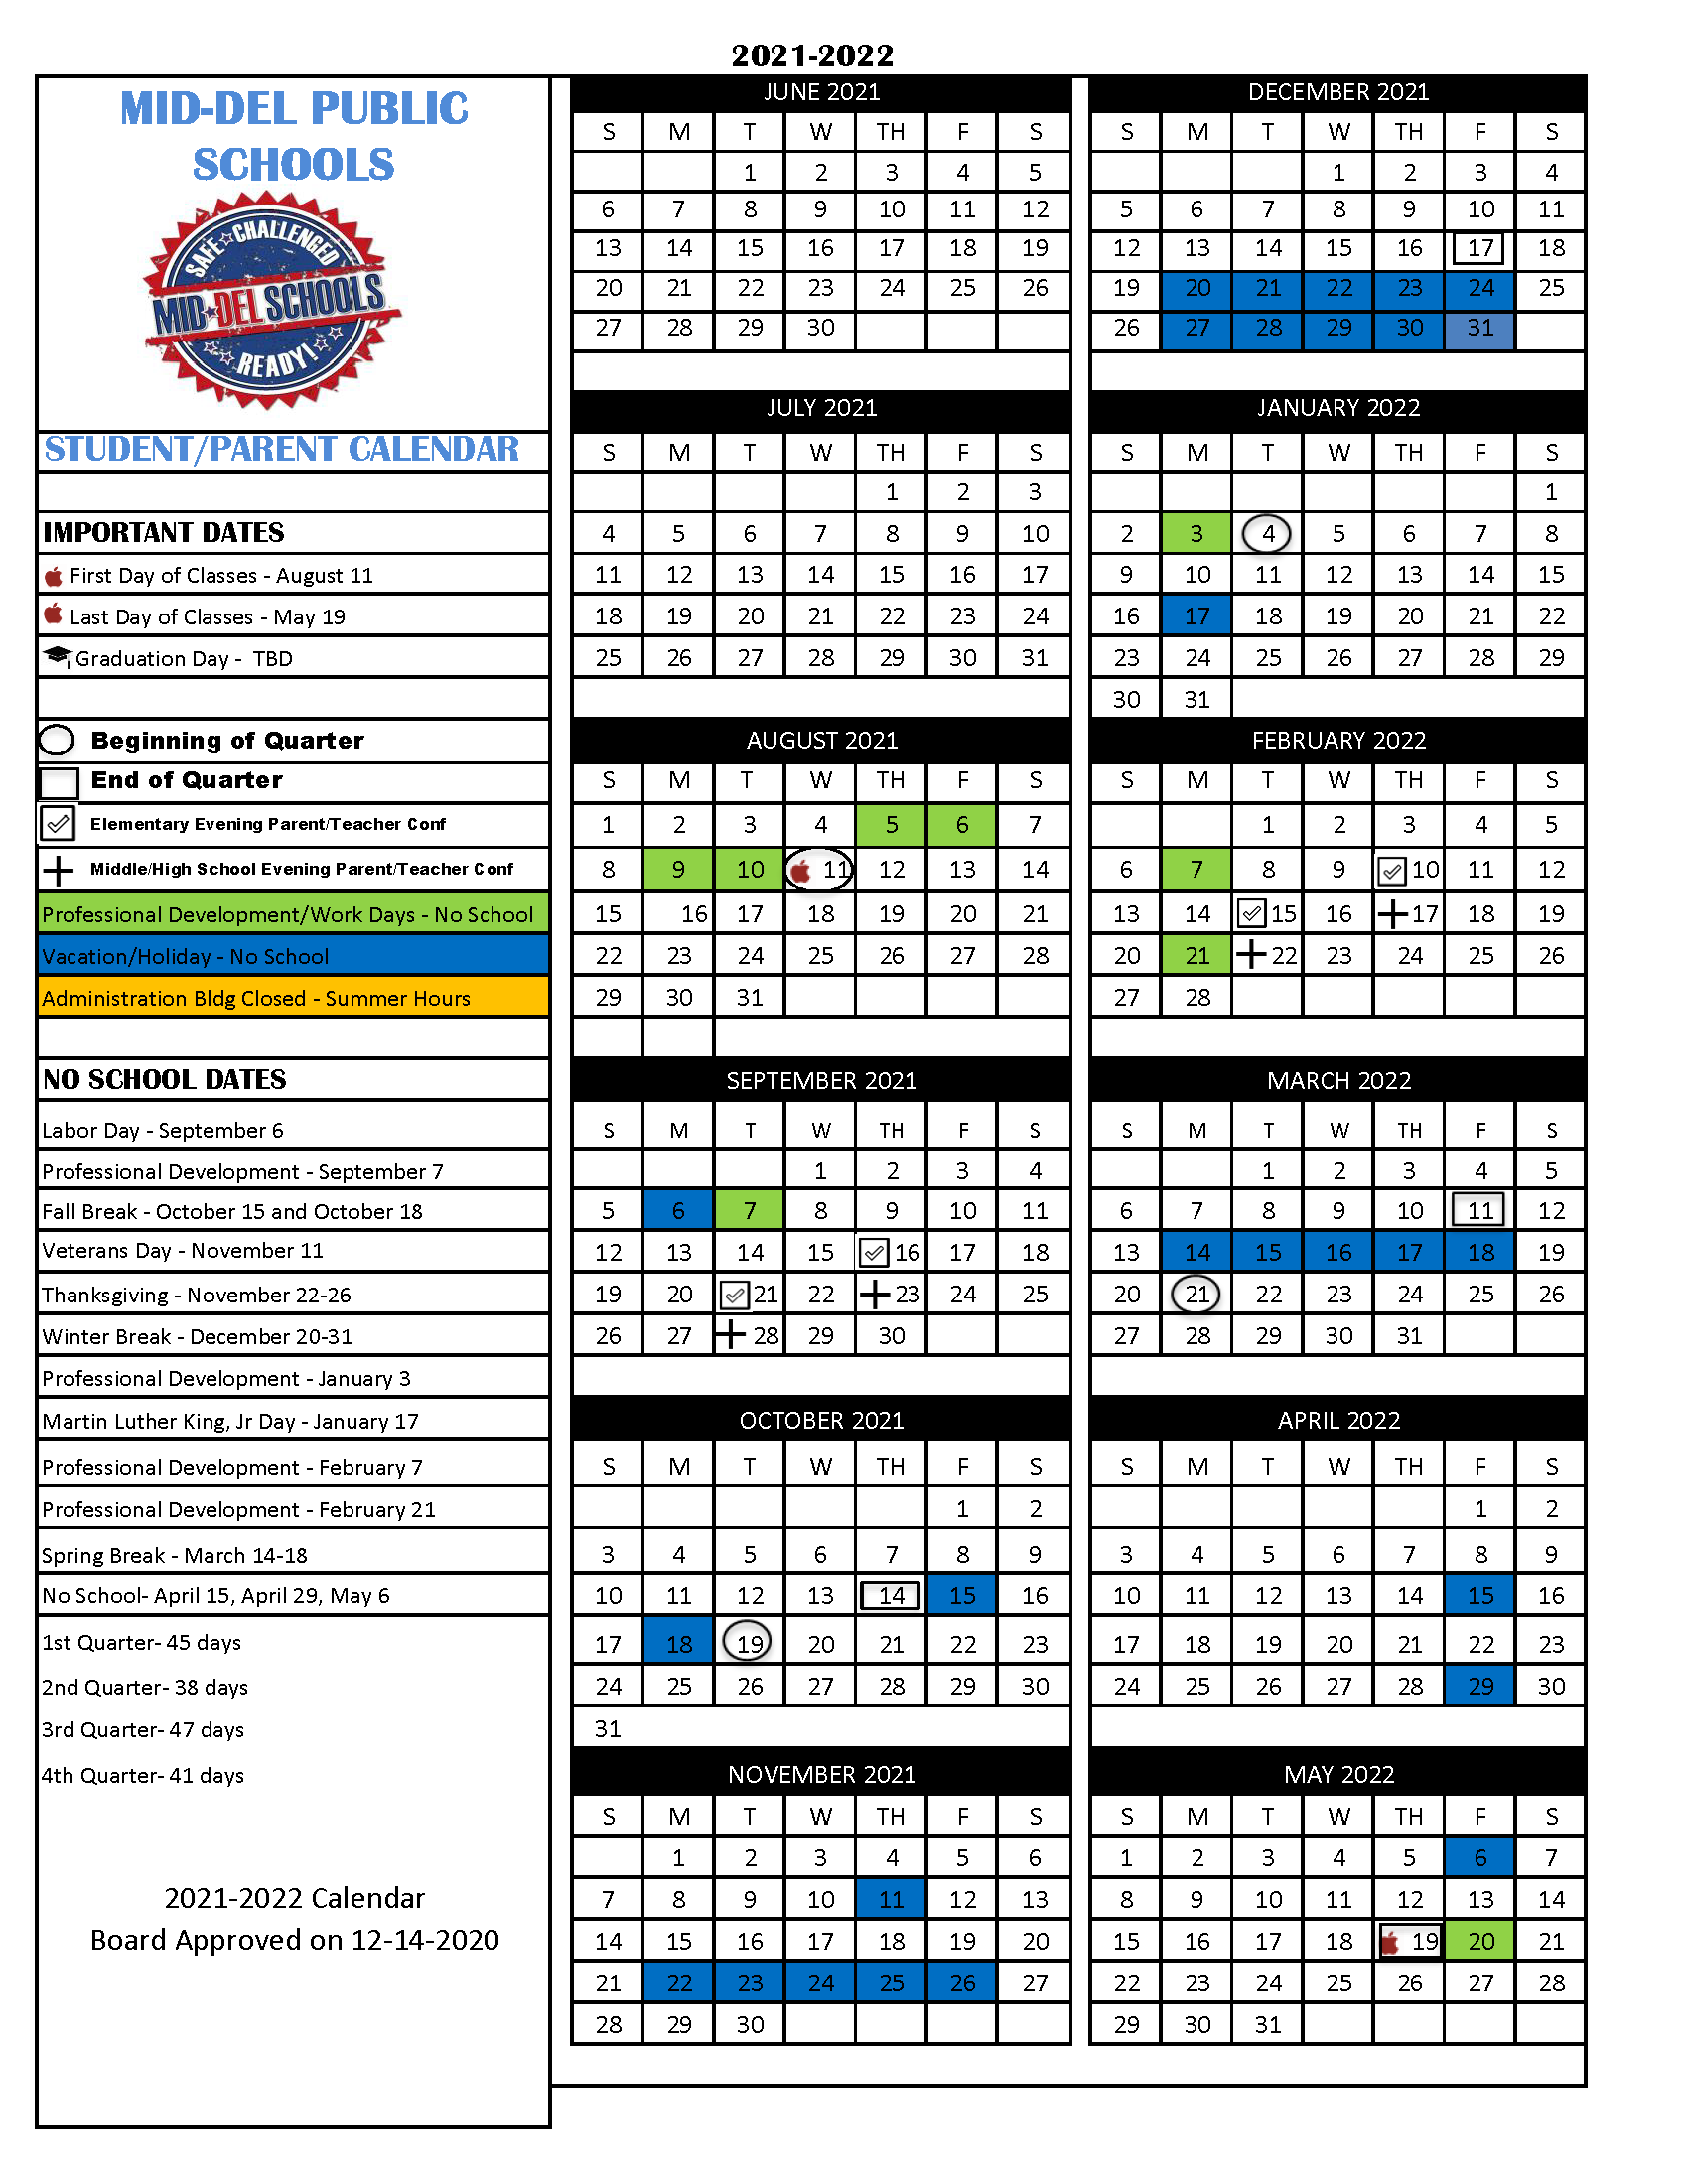 City Tech Calendar Spring 2022 2021-2022 School Calendar | Mid-Del School District